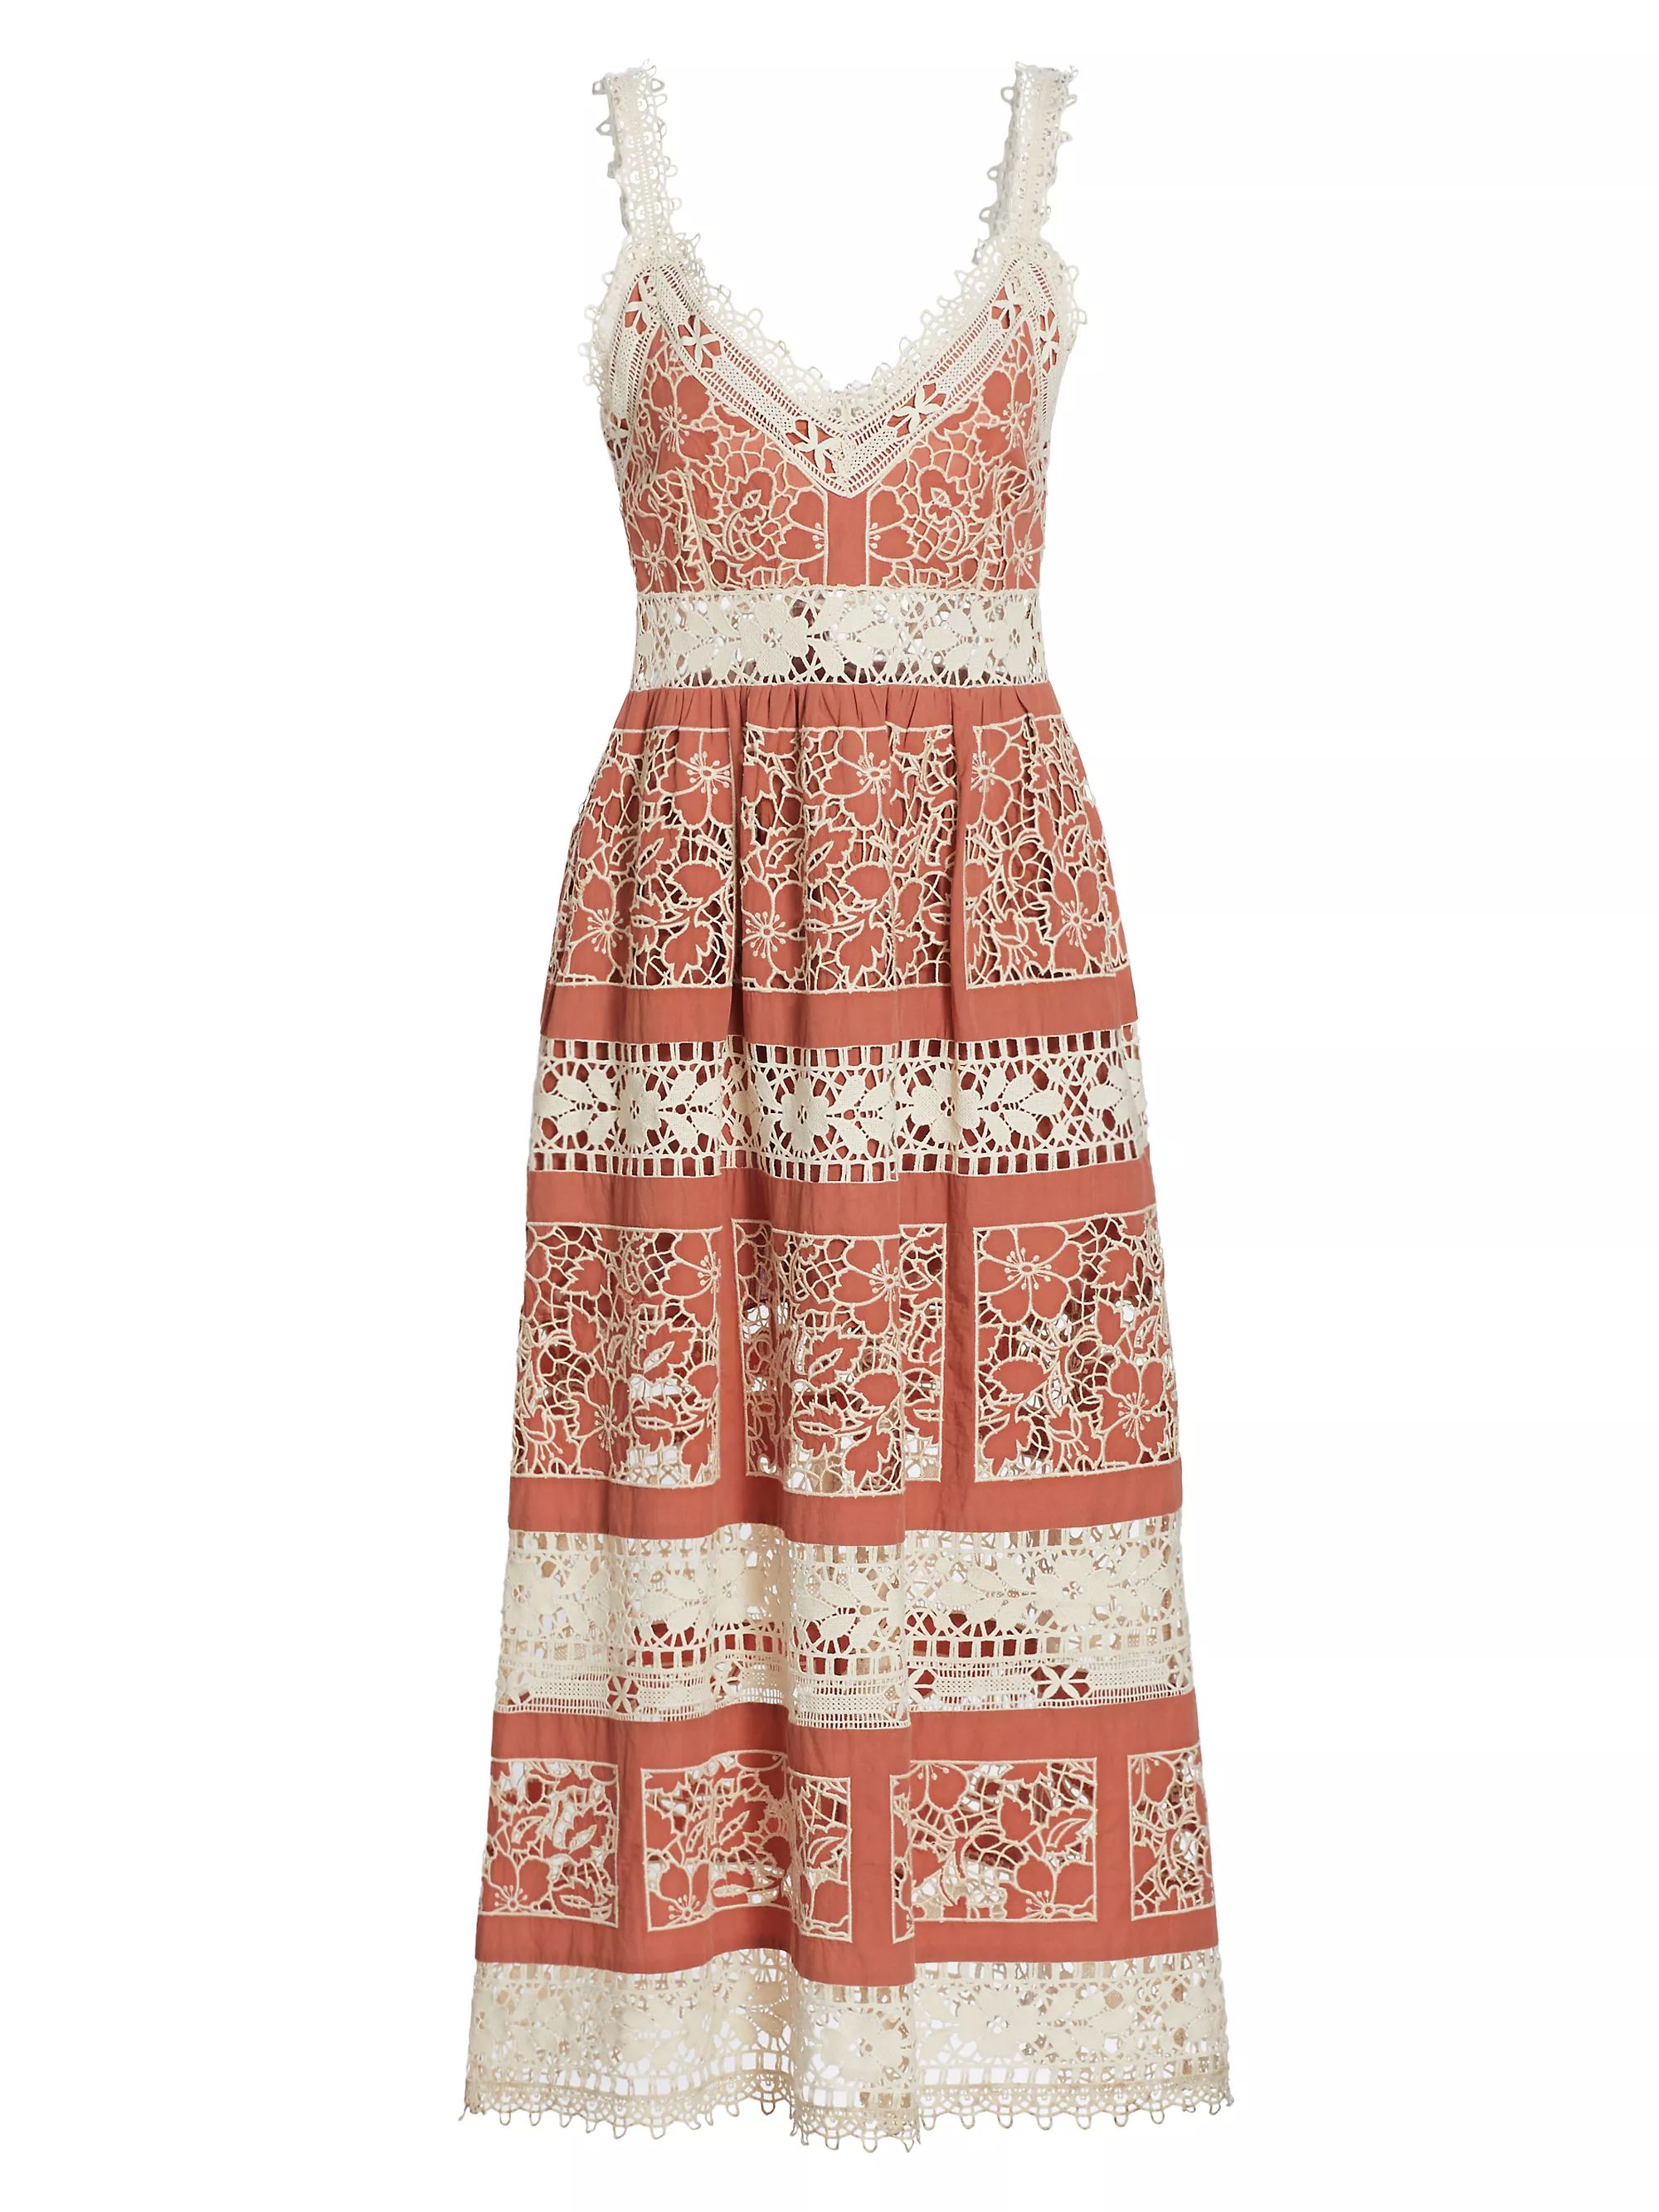 DressesMidiSeaJoah Embroidered Lace Midi-Dress$595 | Saks Fifth Avenue